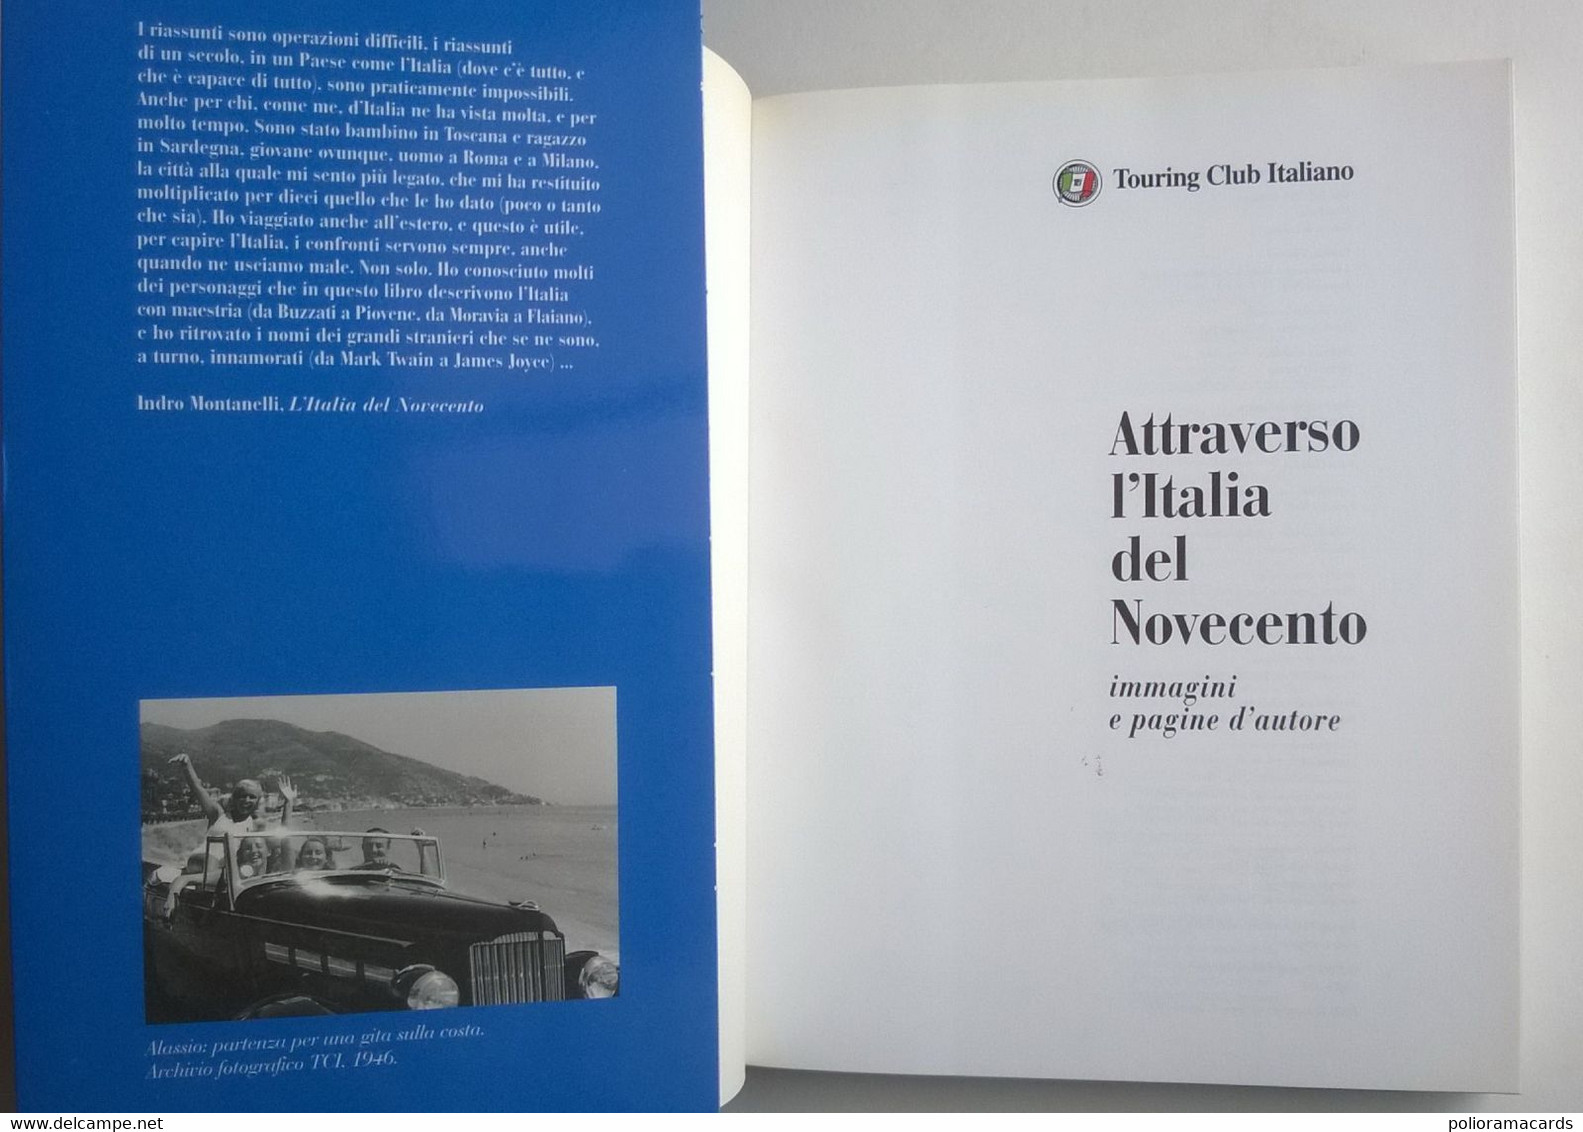 Attraverso L'Italia Del Novecento - Immagini E Pagine D’Autore 1999 (TCI) - Turismo, Viajes